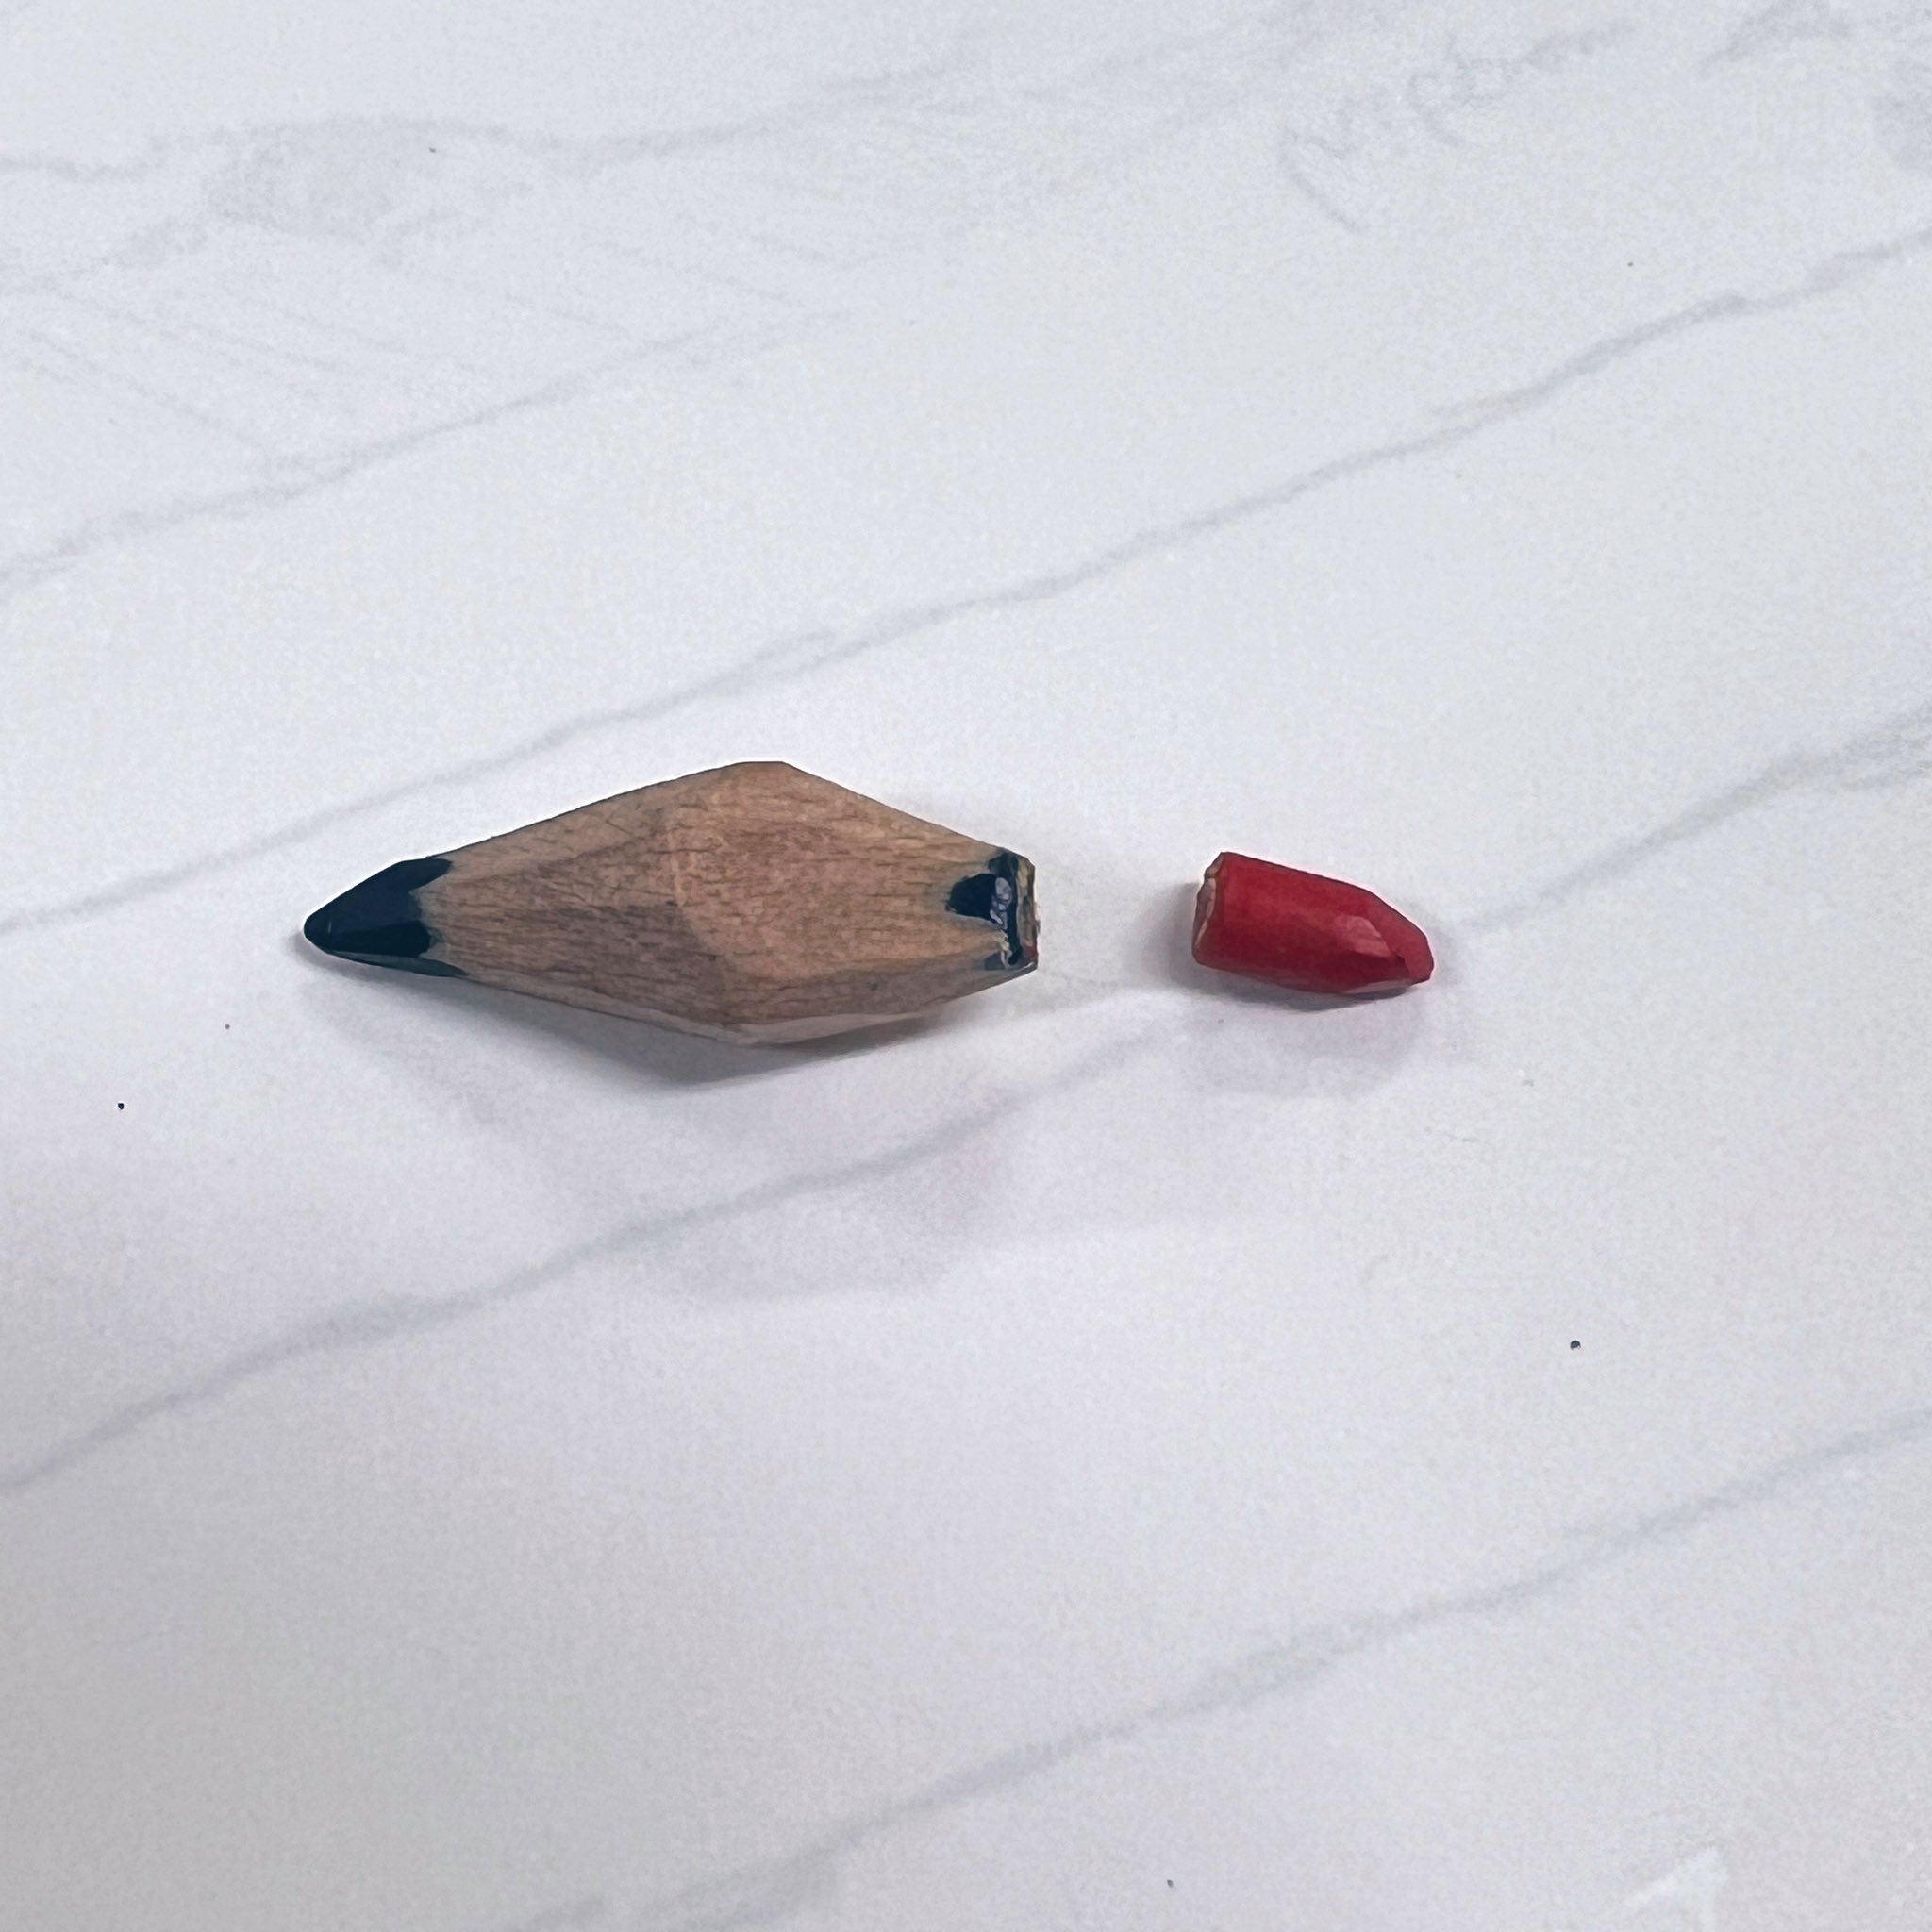 15年使い続けた赤青鉛筆。鉛筆の構造が明らかになる!